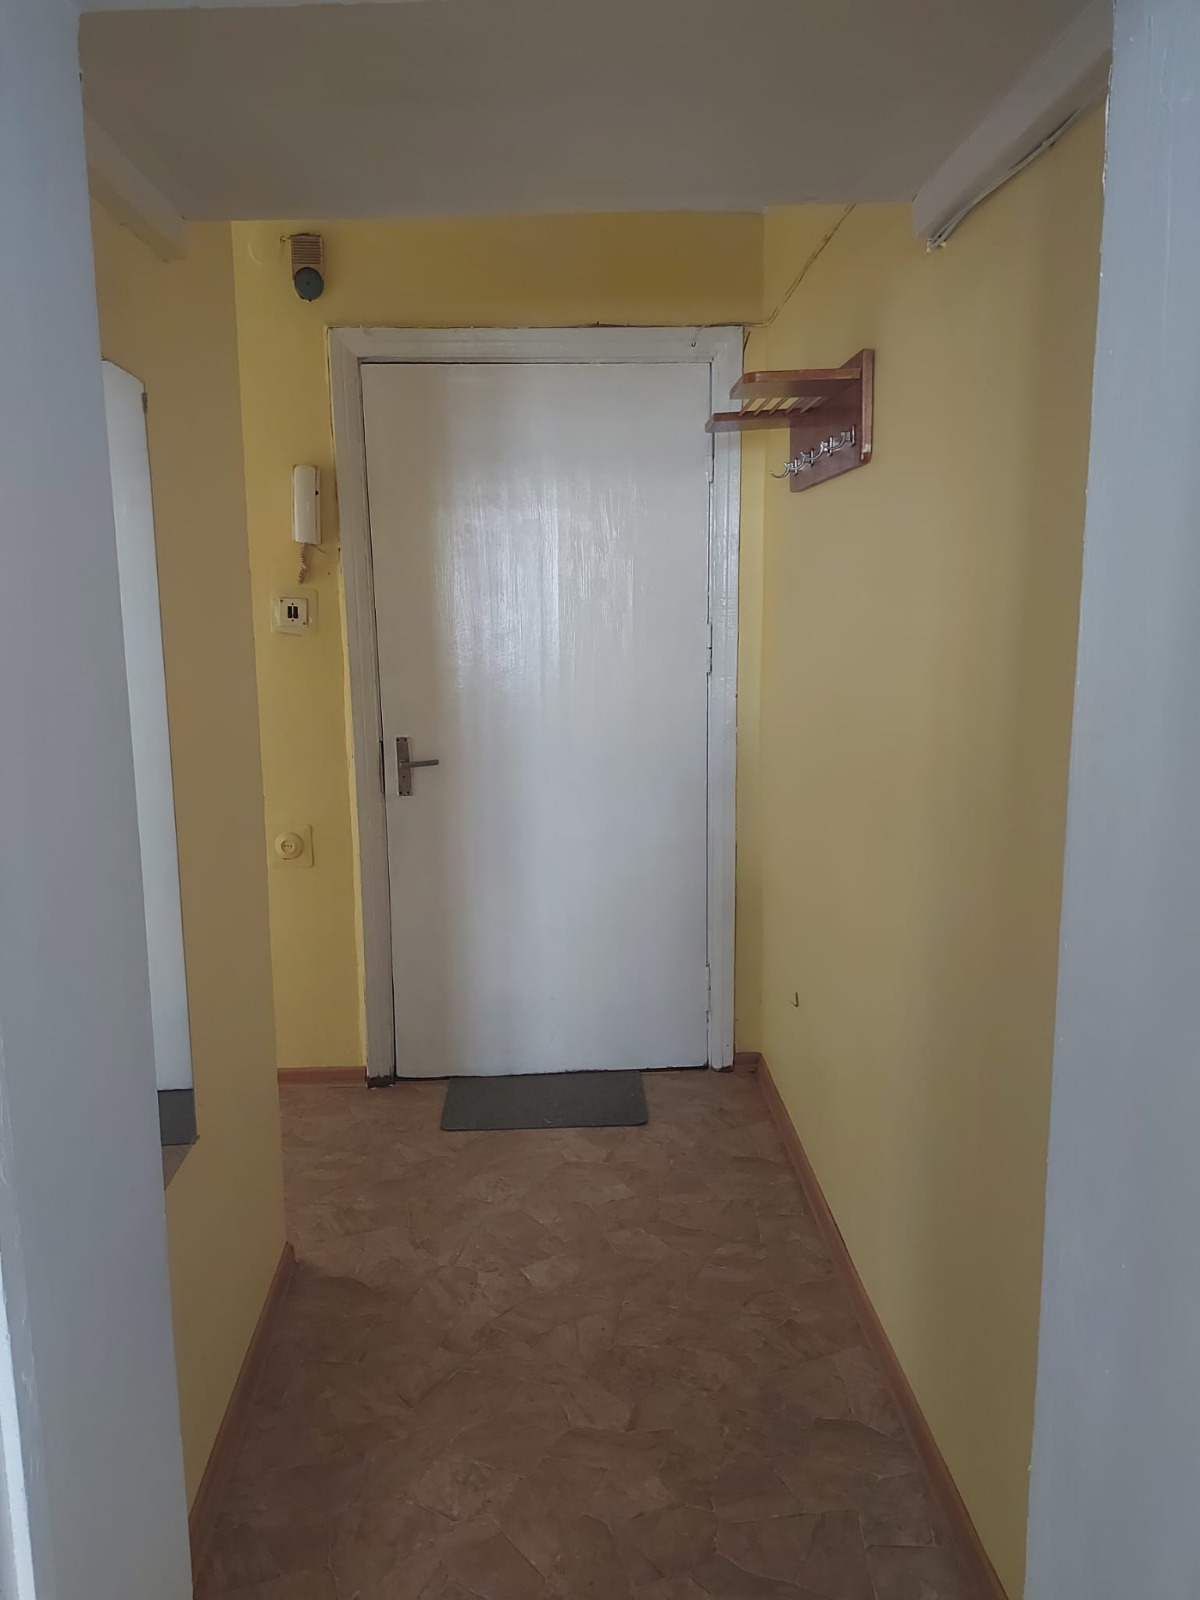 Apartment for rent, Daugavpils street 47 - Image 1